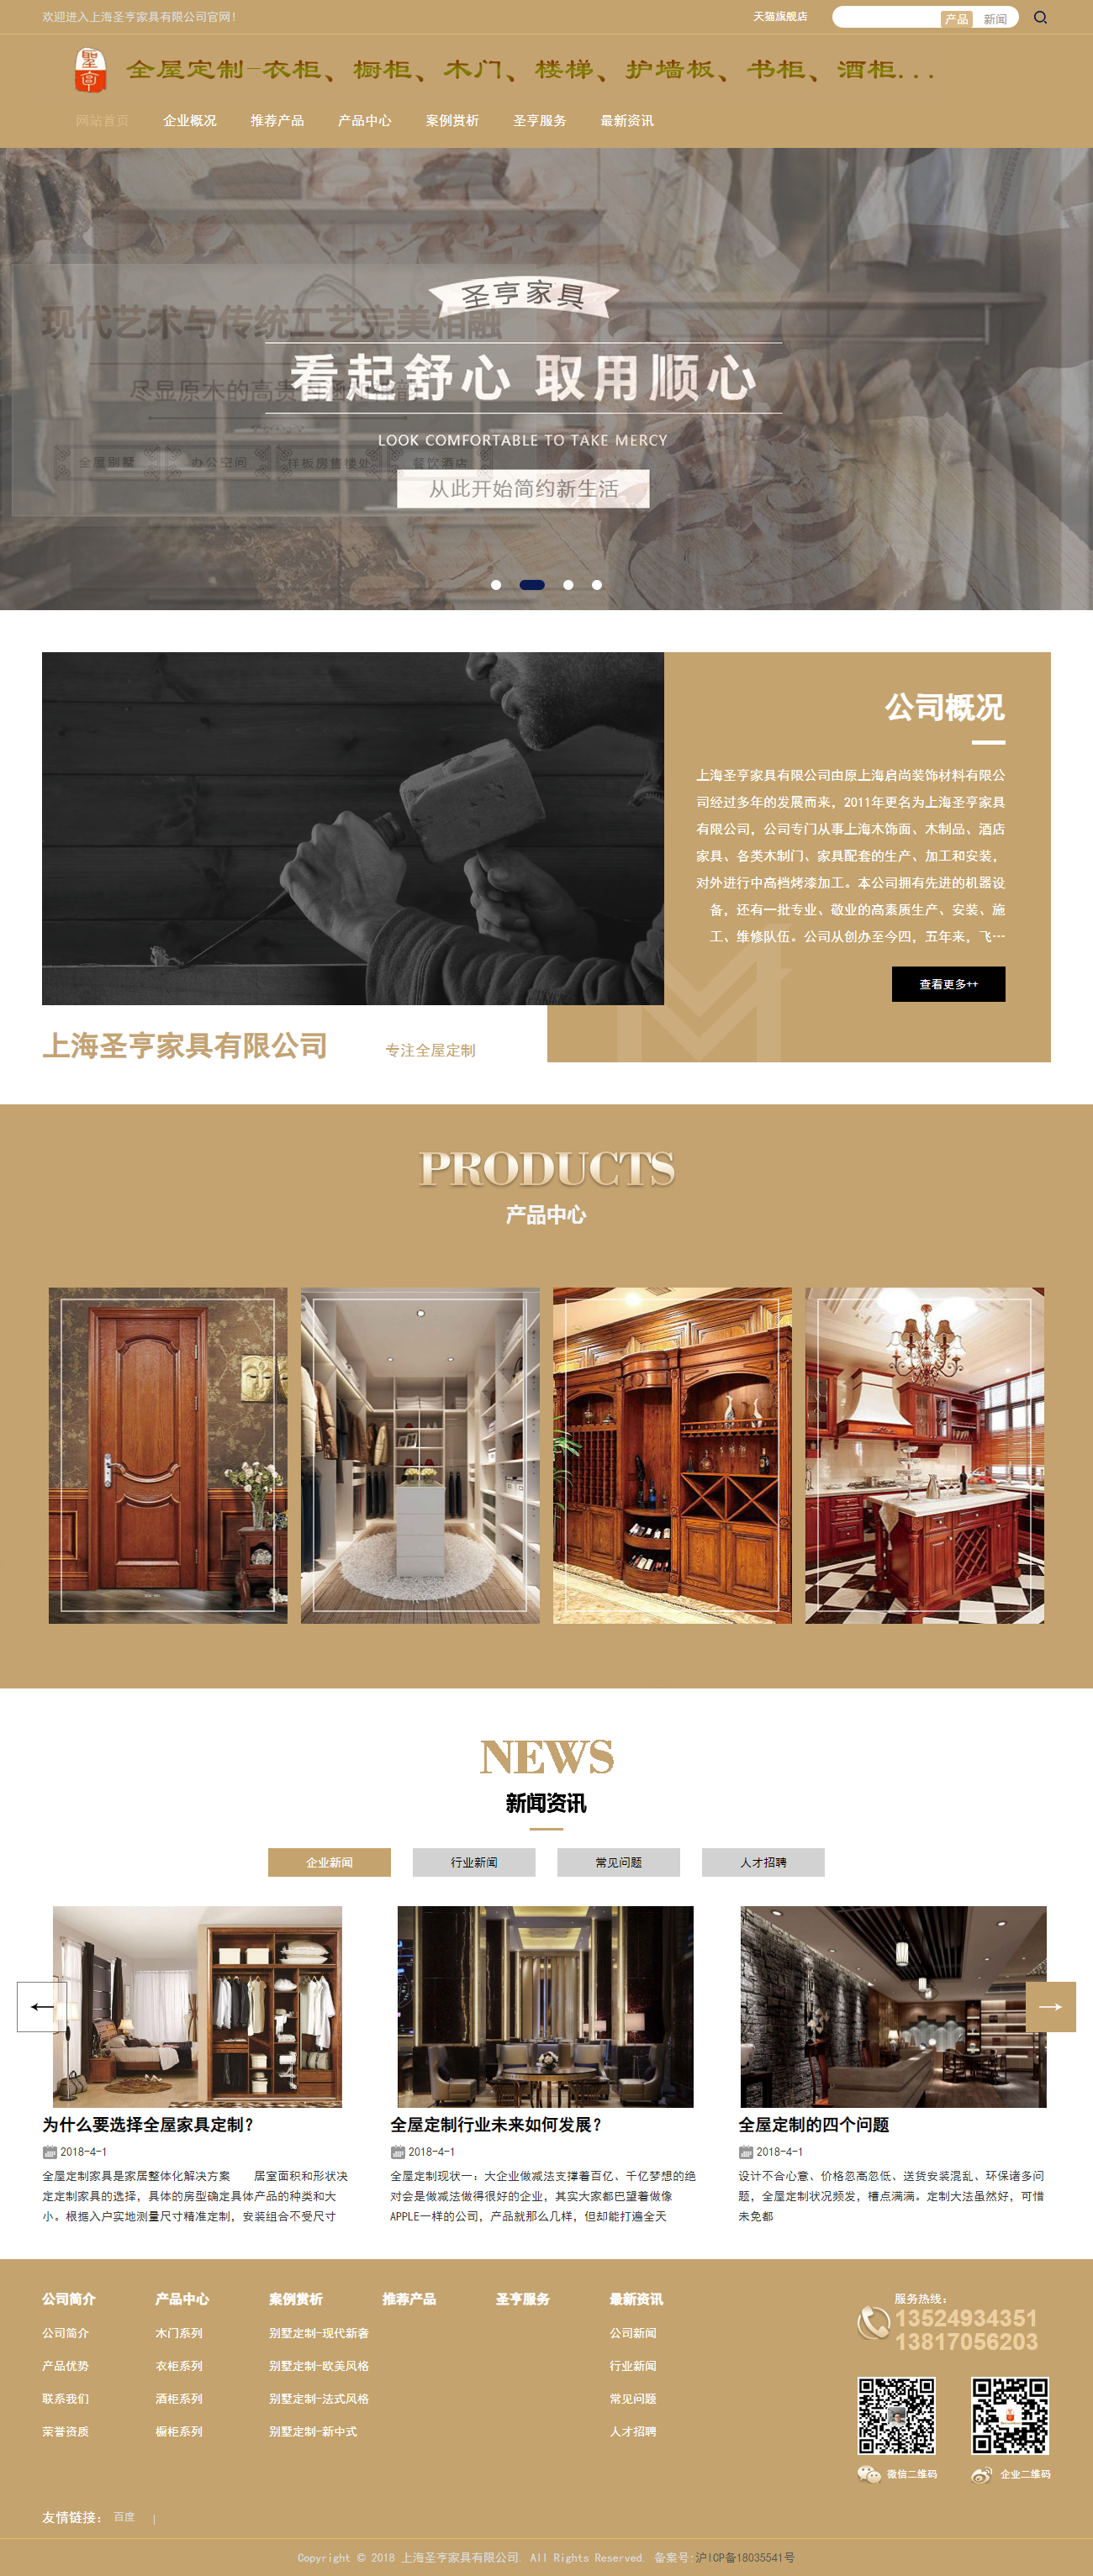 上海圣亨家具有限公司网站案例